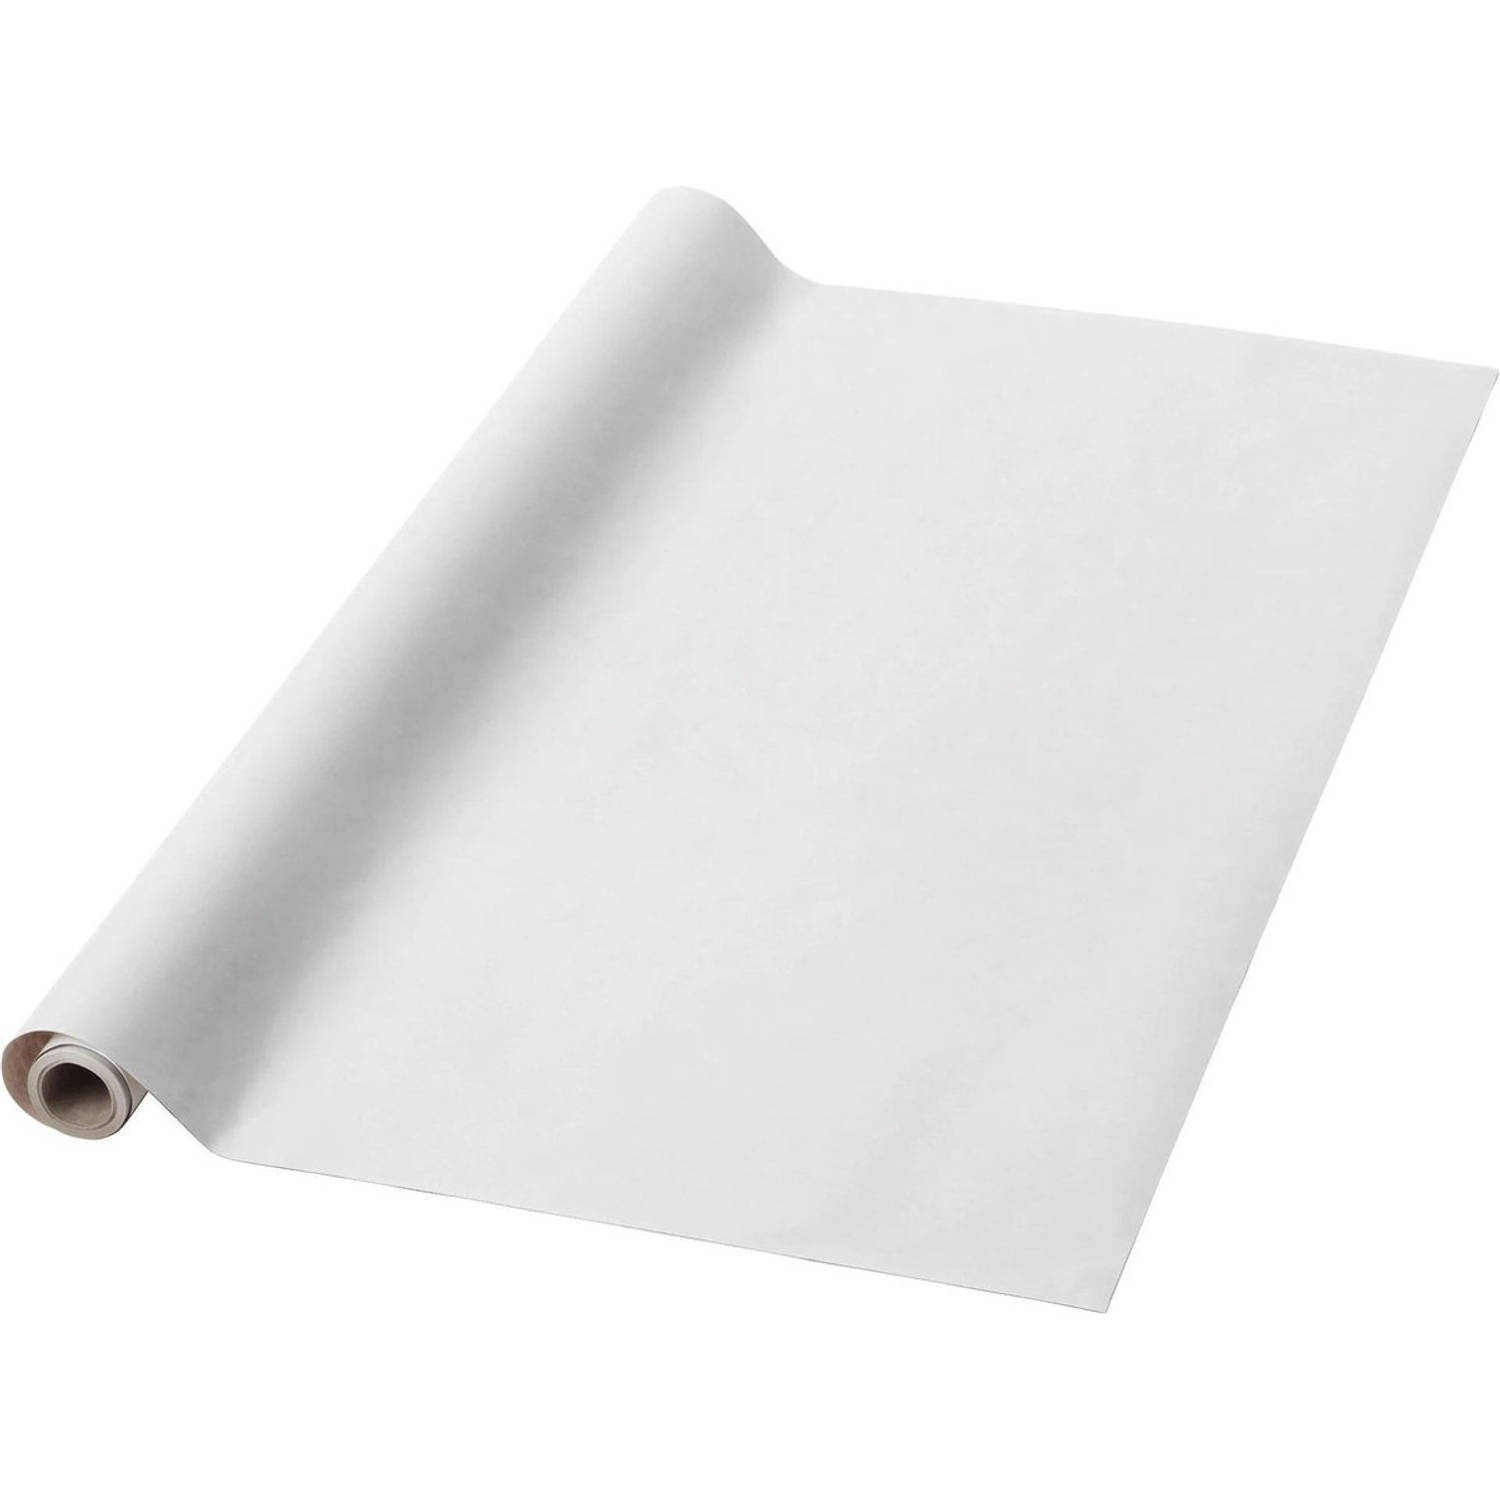 Benza inpakpapier - verpakkingspapier - wit - 70 cm x 5 meter per rol - 5 rollen